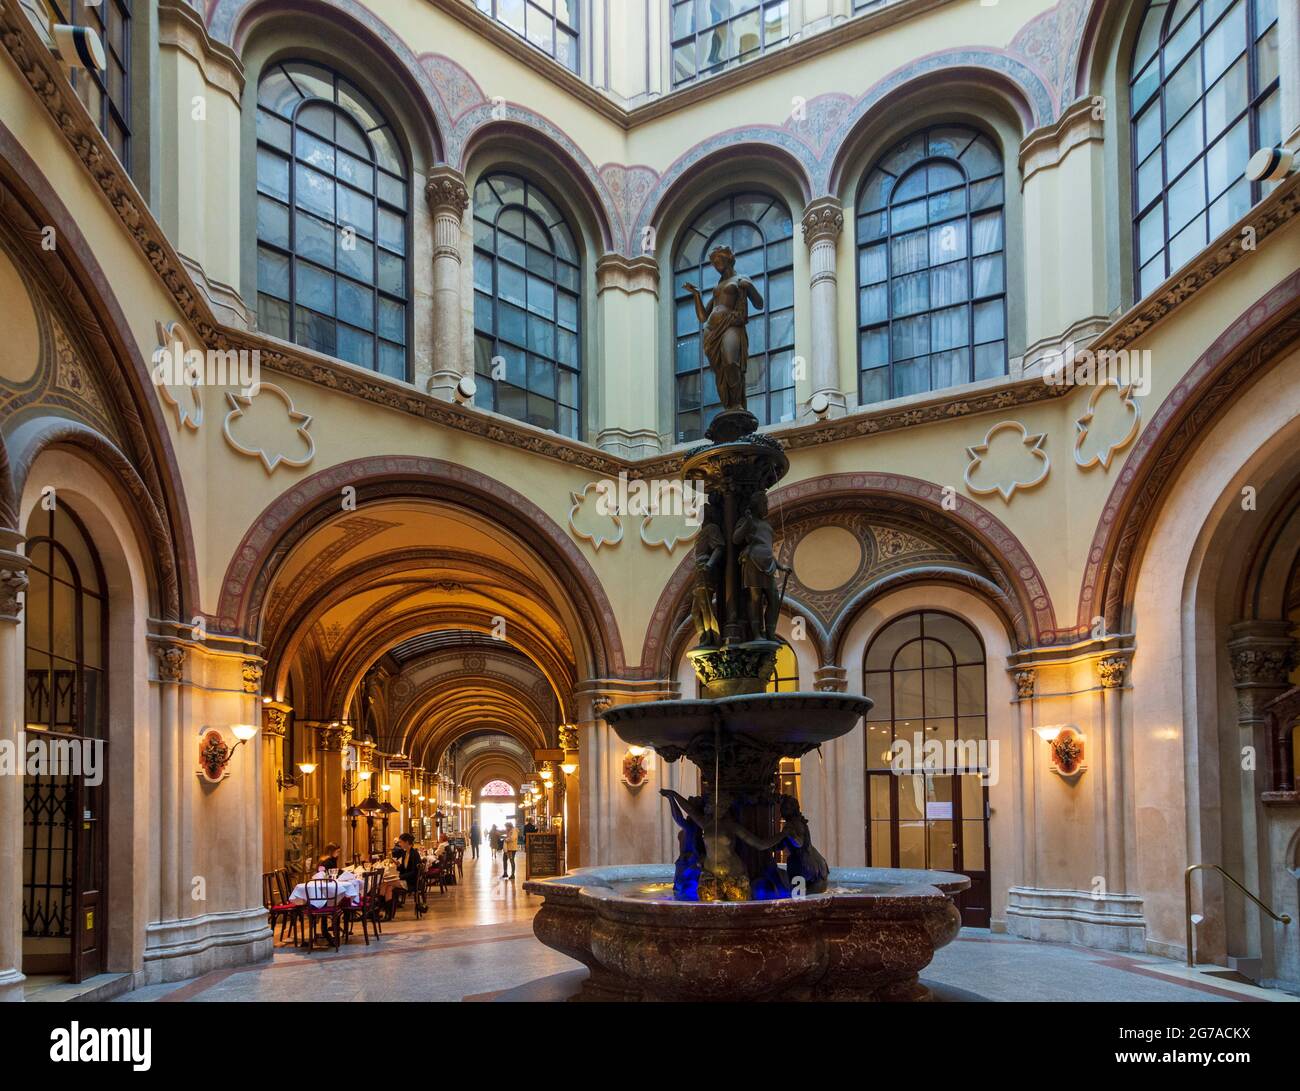 Vienne, Donaunenbrunnen (fontaine de la sirène du Danube) dans une cour intérieure du Palais Ferstel en 01. Vieille ville, Vienne, Autriche Banque D'Images